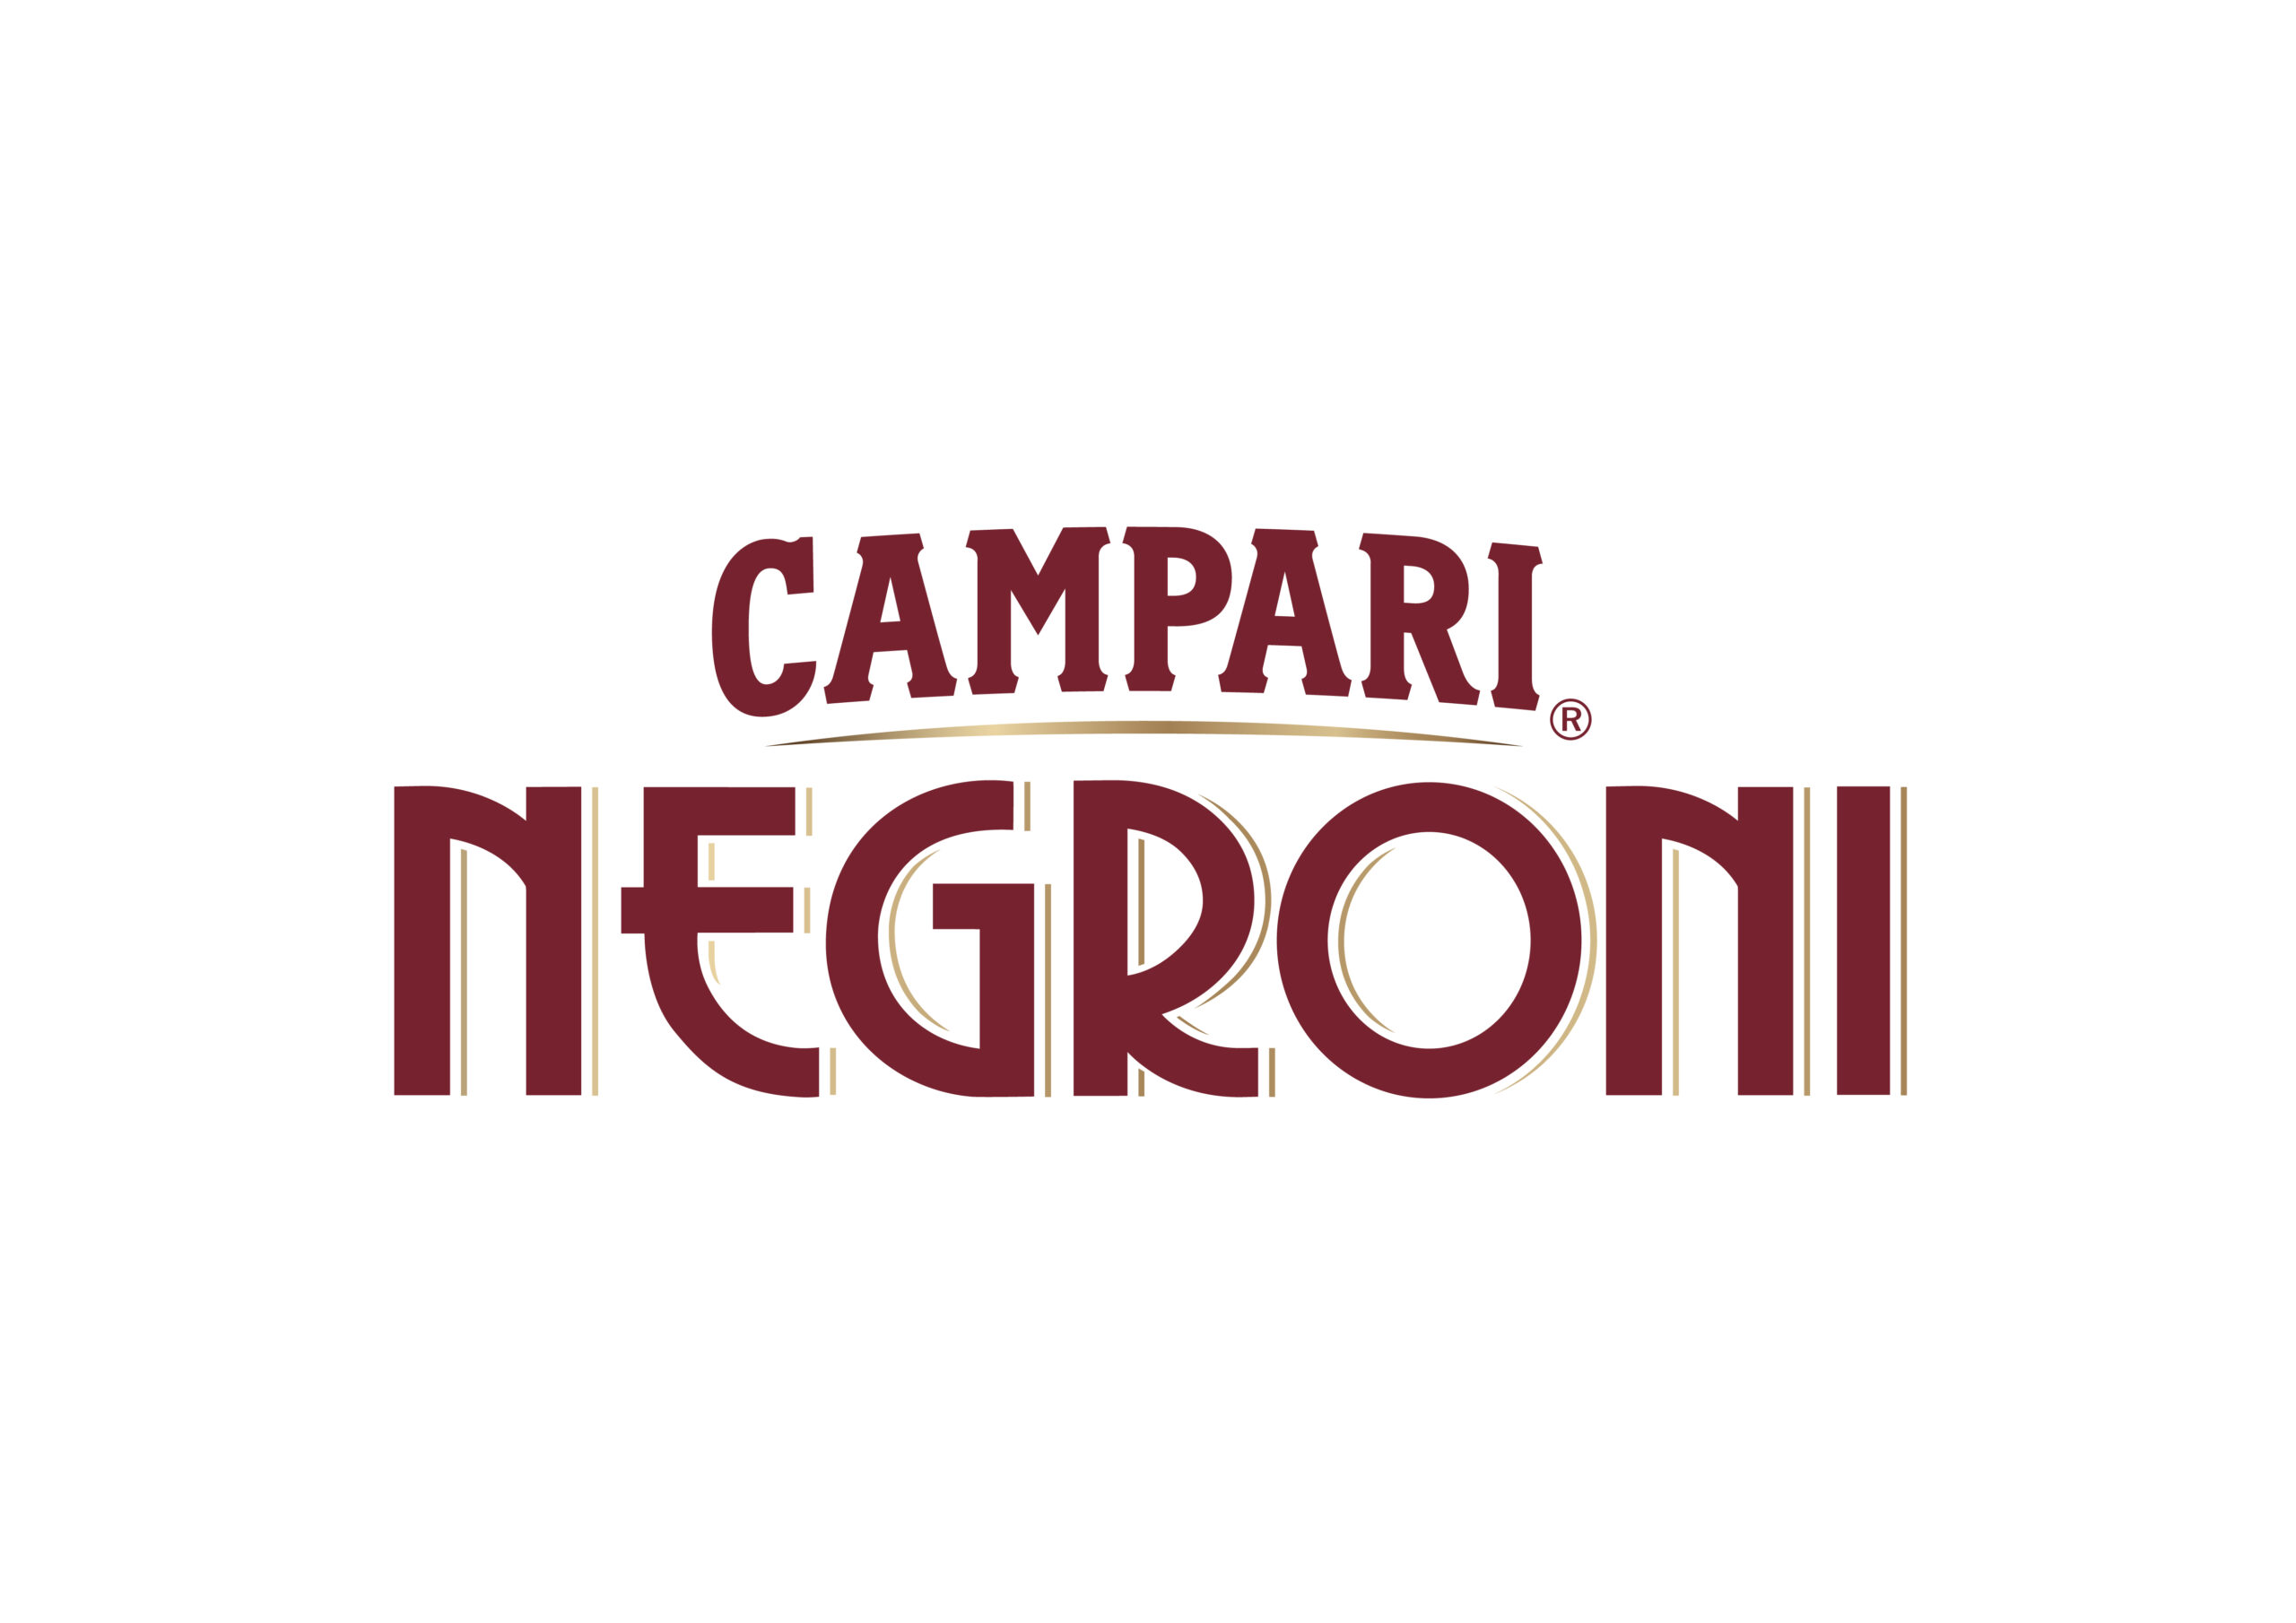 Campari Negroni